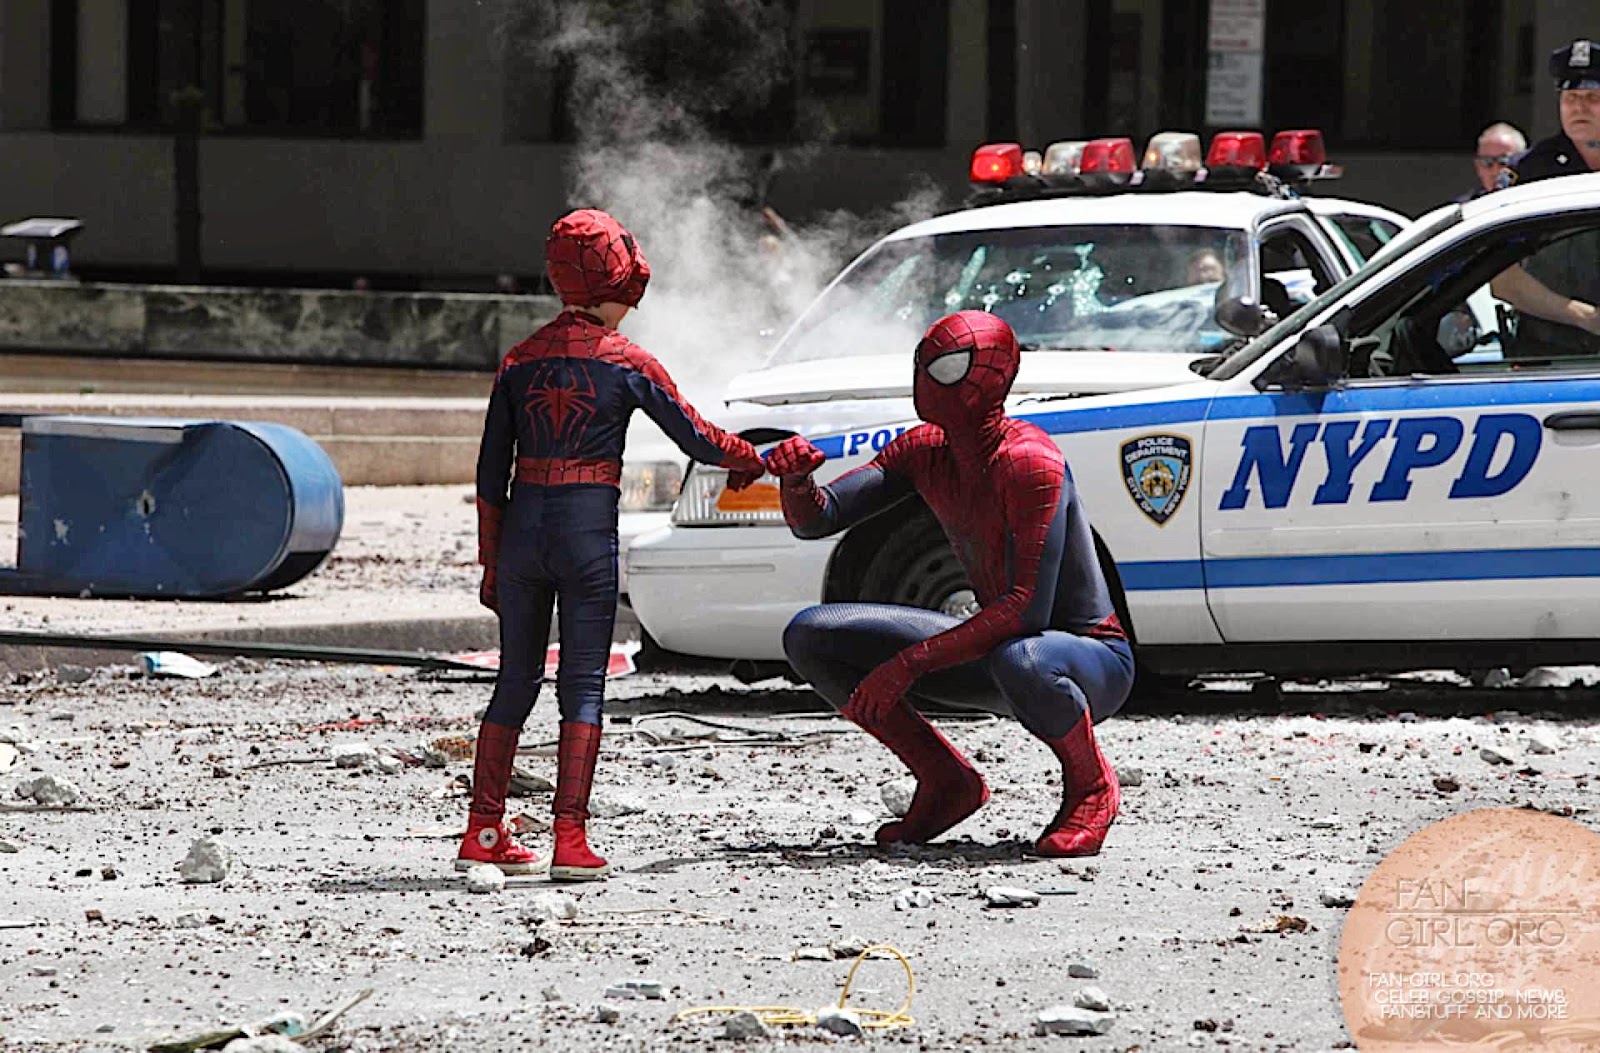 ｃｉａ こちら映画中央情報局です Amazing Spider Man 人気コミックヒーロー映画の続編 アメイジング スパイダーマン2 の強敵ライノを倒すため リトル スパイダーボーイと アンドリュー ガーフィールドのスパイダーマンがタッグを組んだセット フォト